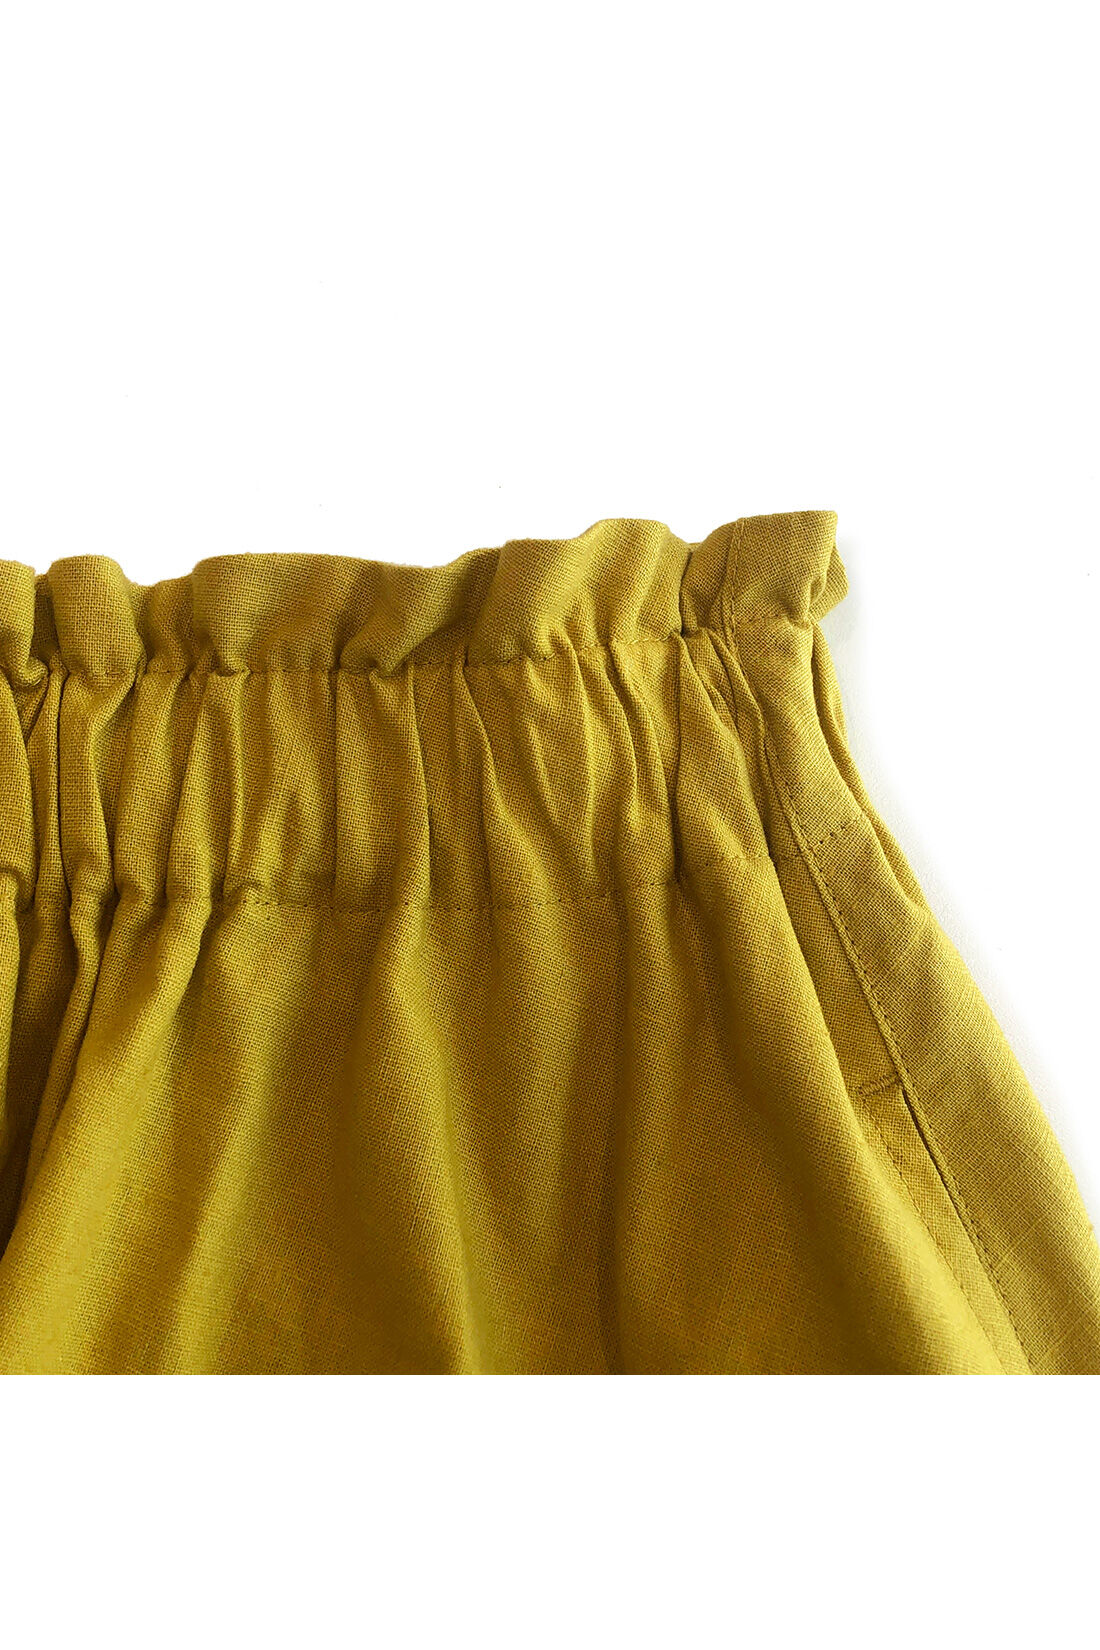 シロップ．|スカートみたいな ちょい厚コットンリネンのボリュームガウチョパンツ〈マスタードイエロー〉